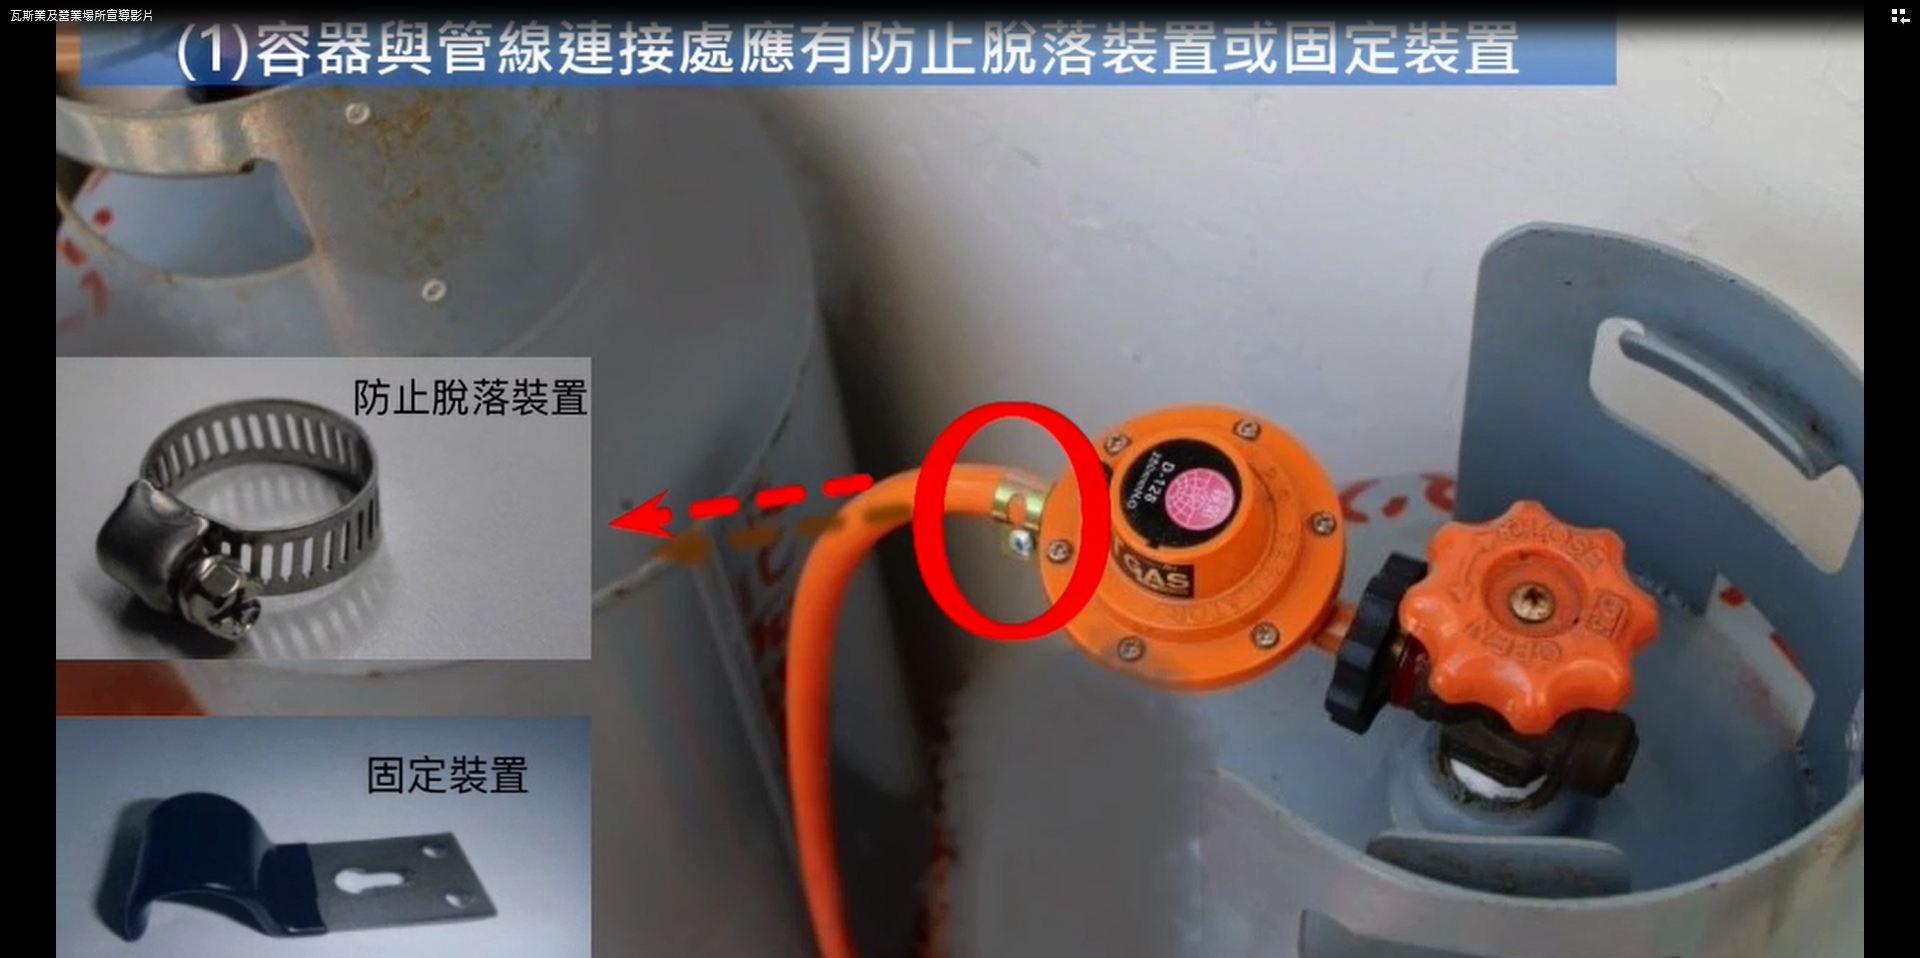 容器與管線連接處應有防止脫落裝置或固定裝置。(記者陳信宏翻攝)